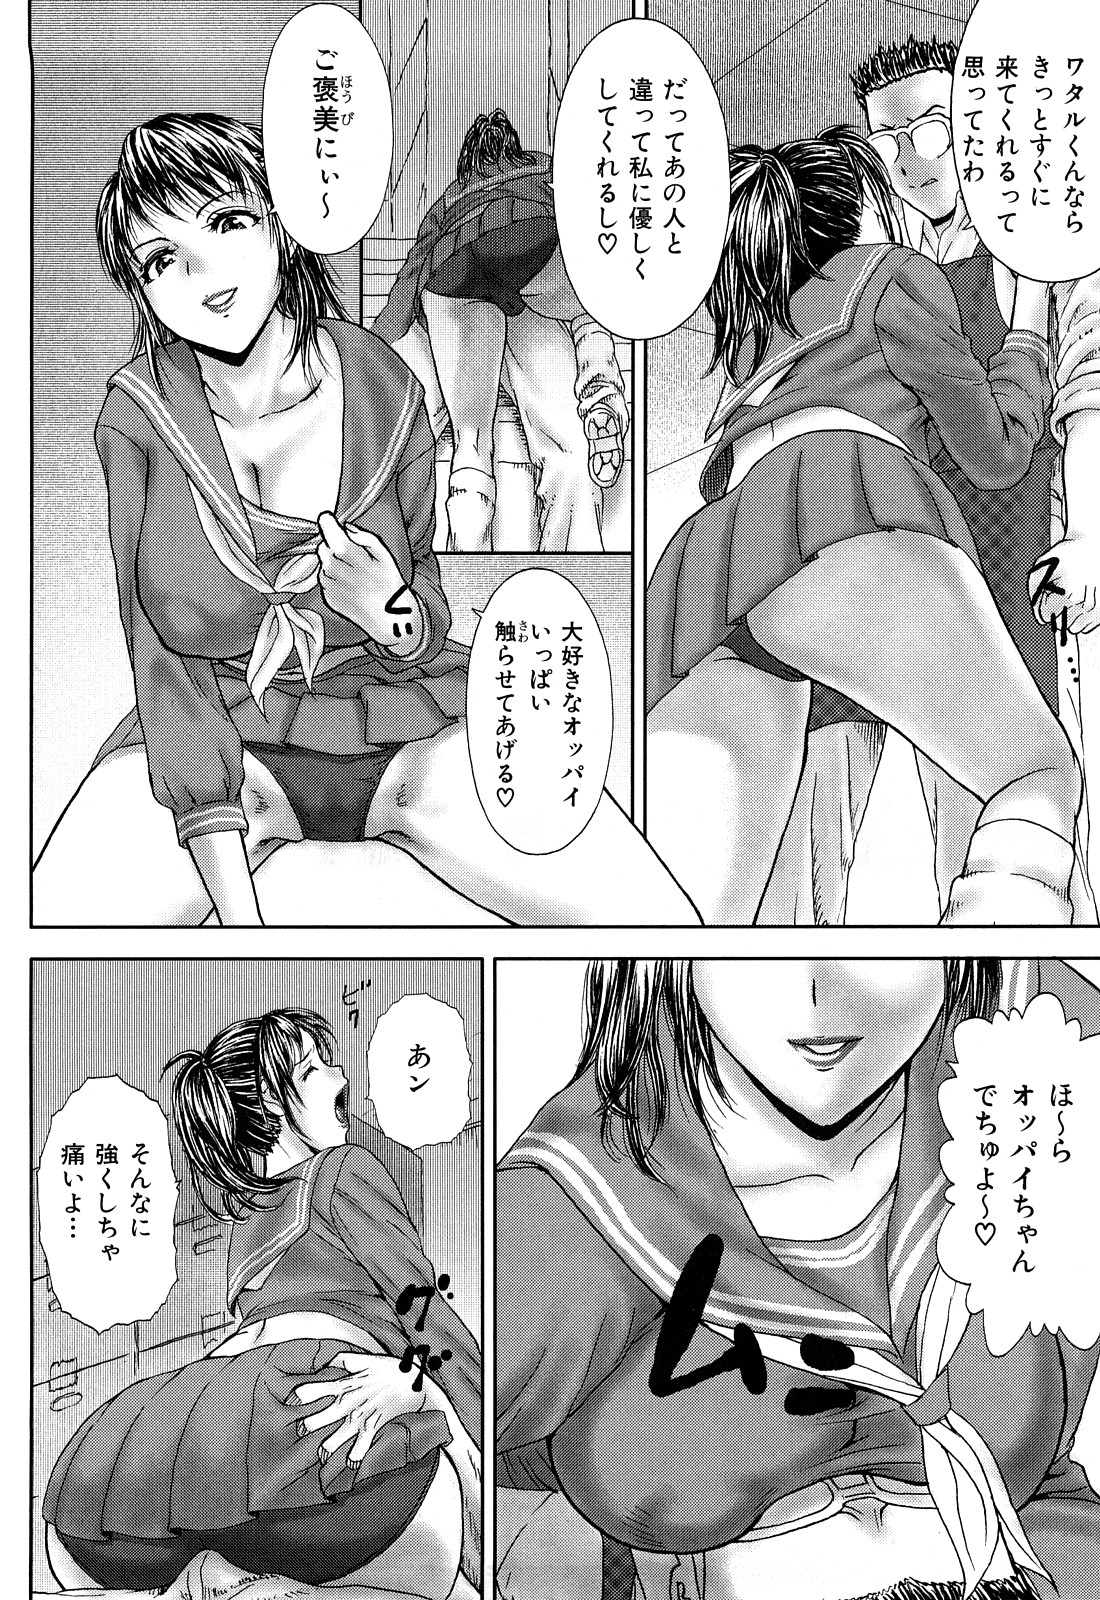 [EXTREME] Tsuma No Shizuku ~Nikuyome Miyuki 29 sai~ page 14 full